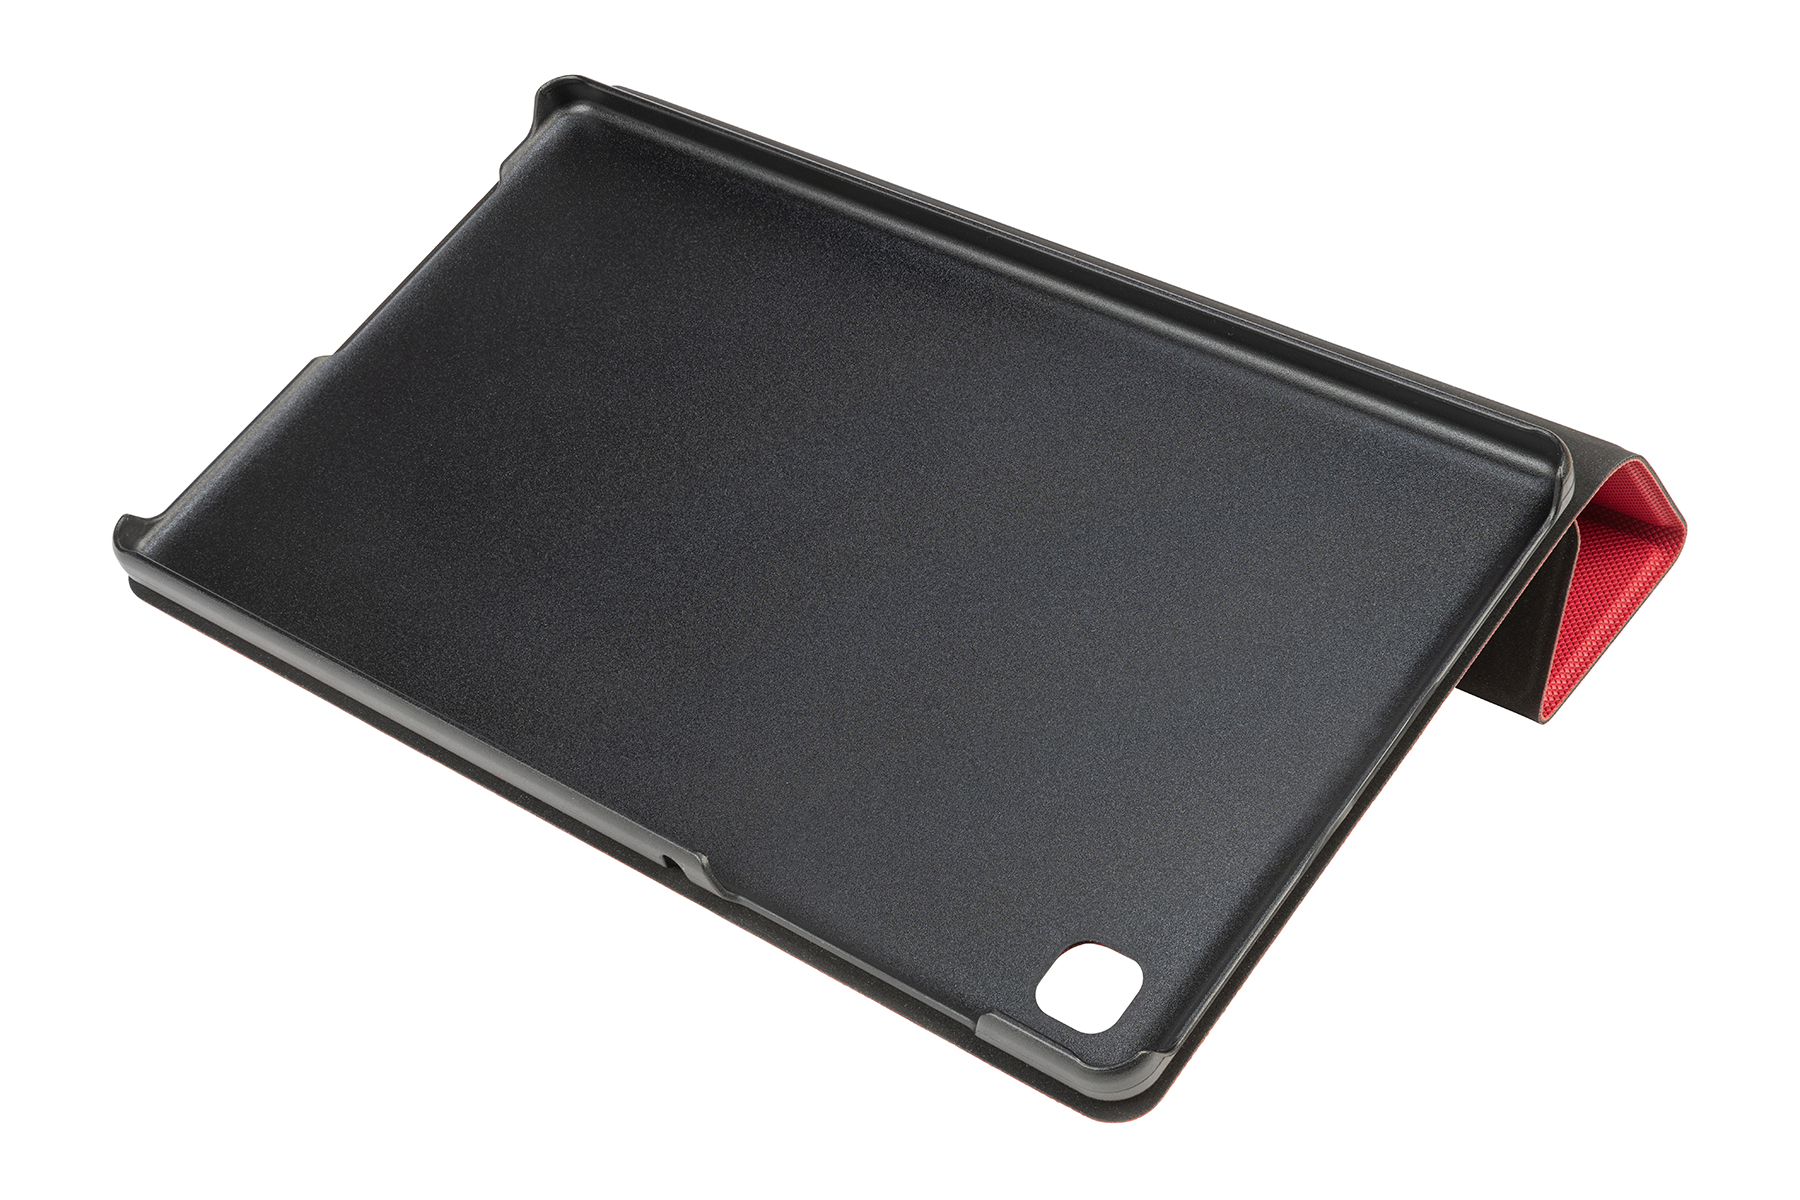 Hülle TUCANO Samsung Kunststoff, Flip Cover für Gala Tablet Rot